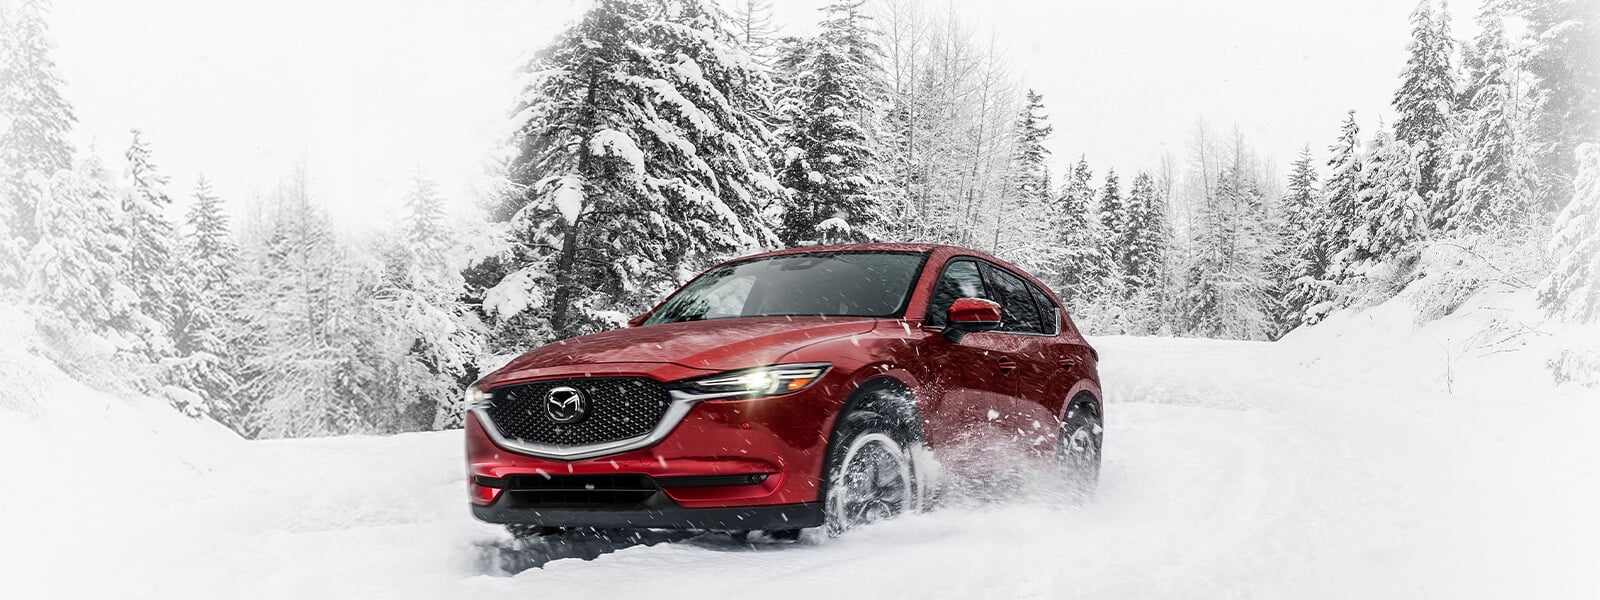 Un VUS Mazda rouge vibrant cristal avec les phares allumés passe devant des conifères enneigés alors qu’il négocie une courbe dans la neige profonde sur une route rurale 